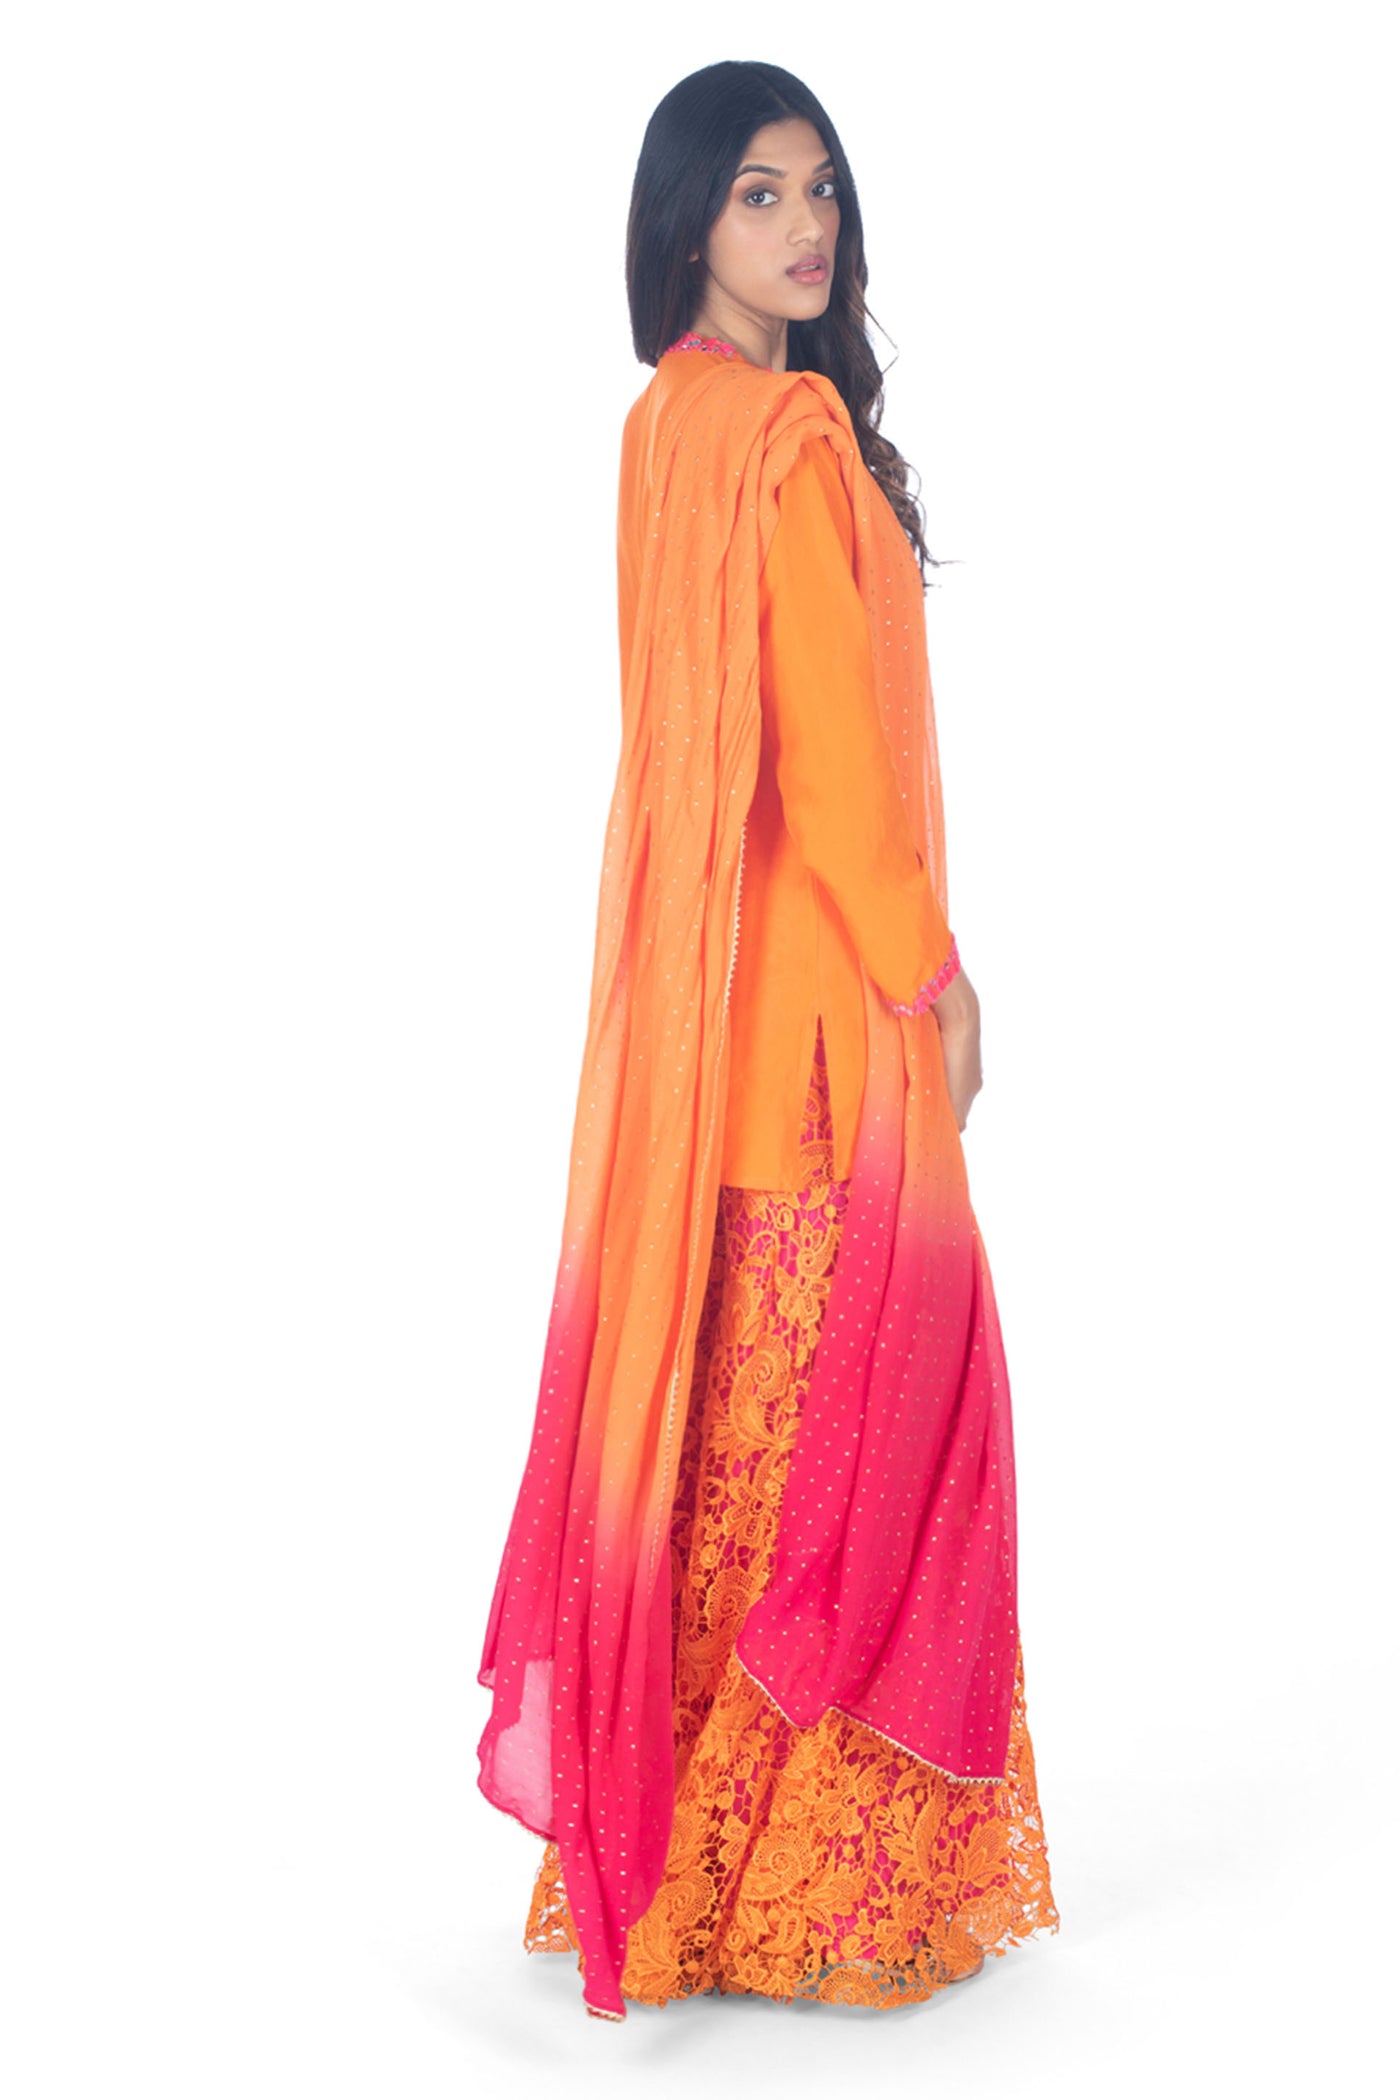 Monisha Jaising Dual Chrome Sharara orange online shopping melange singapore indian designer wear